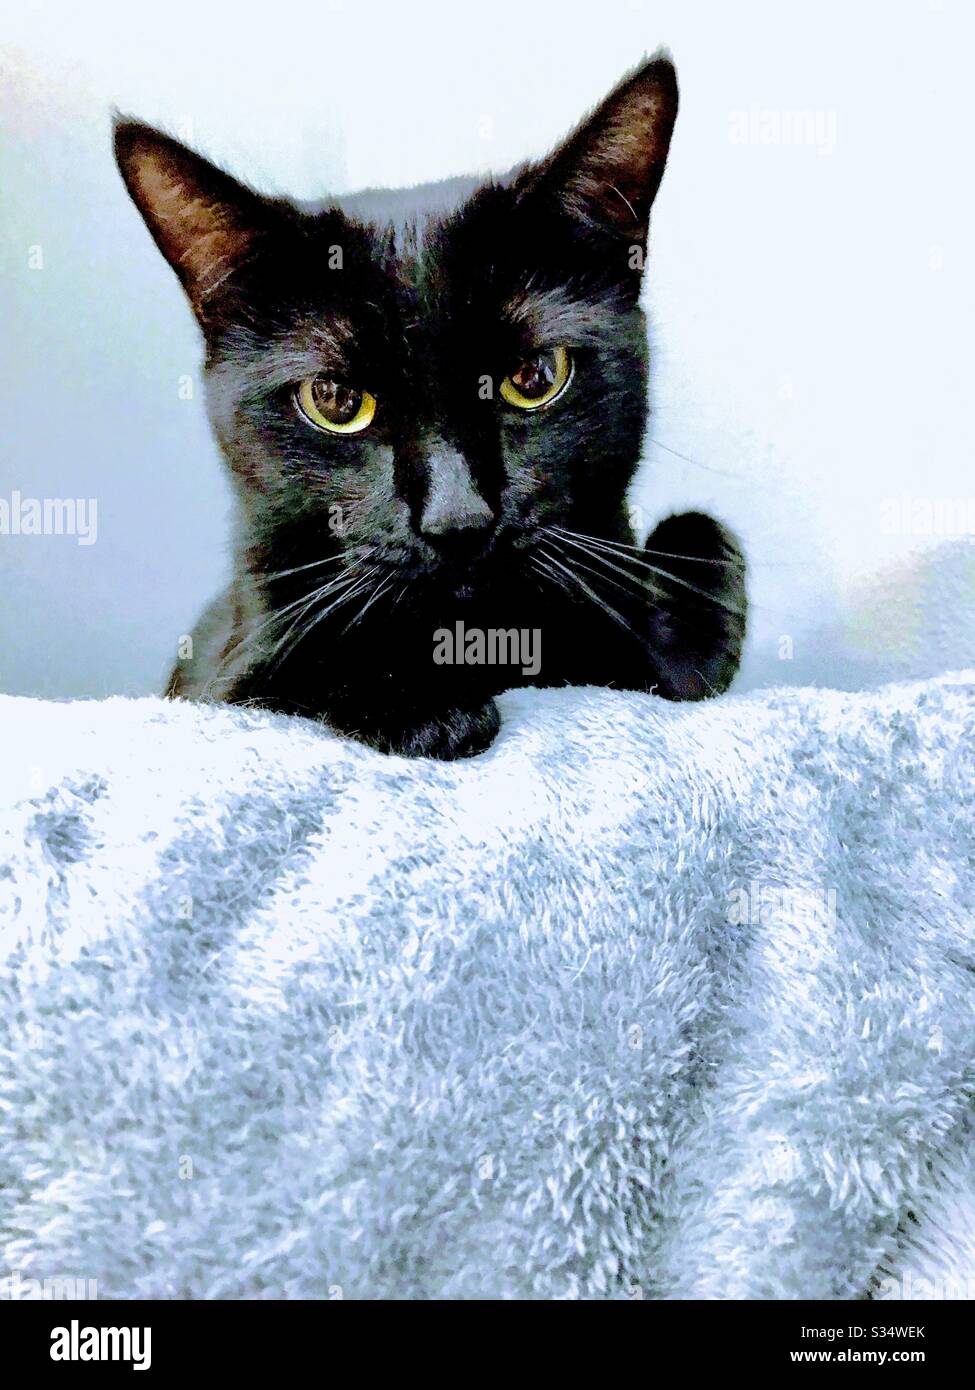 Ritratto di bellissimo gatto Bombay con splendidi occhi color oro o rame e pelliccia nera satinata Foto Stock